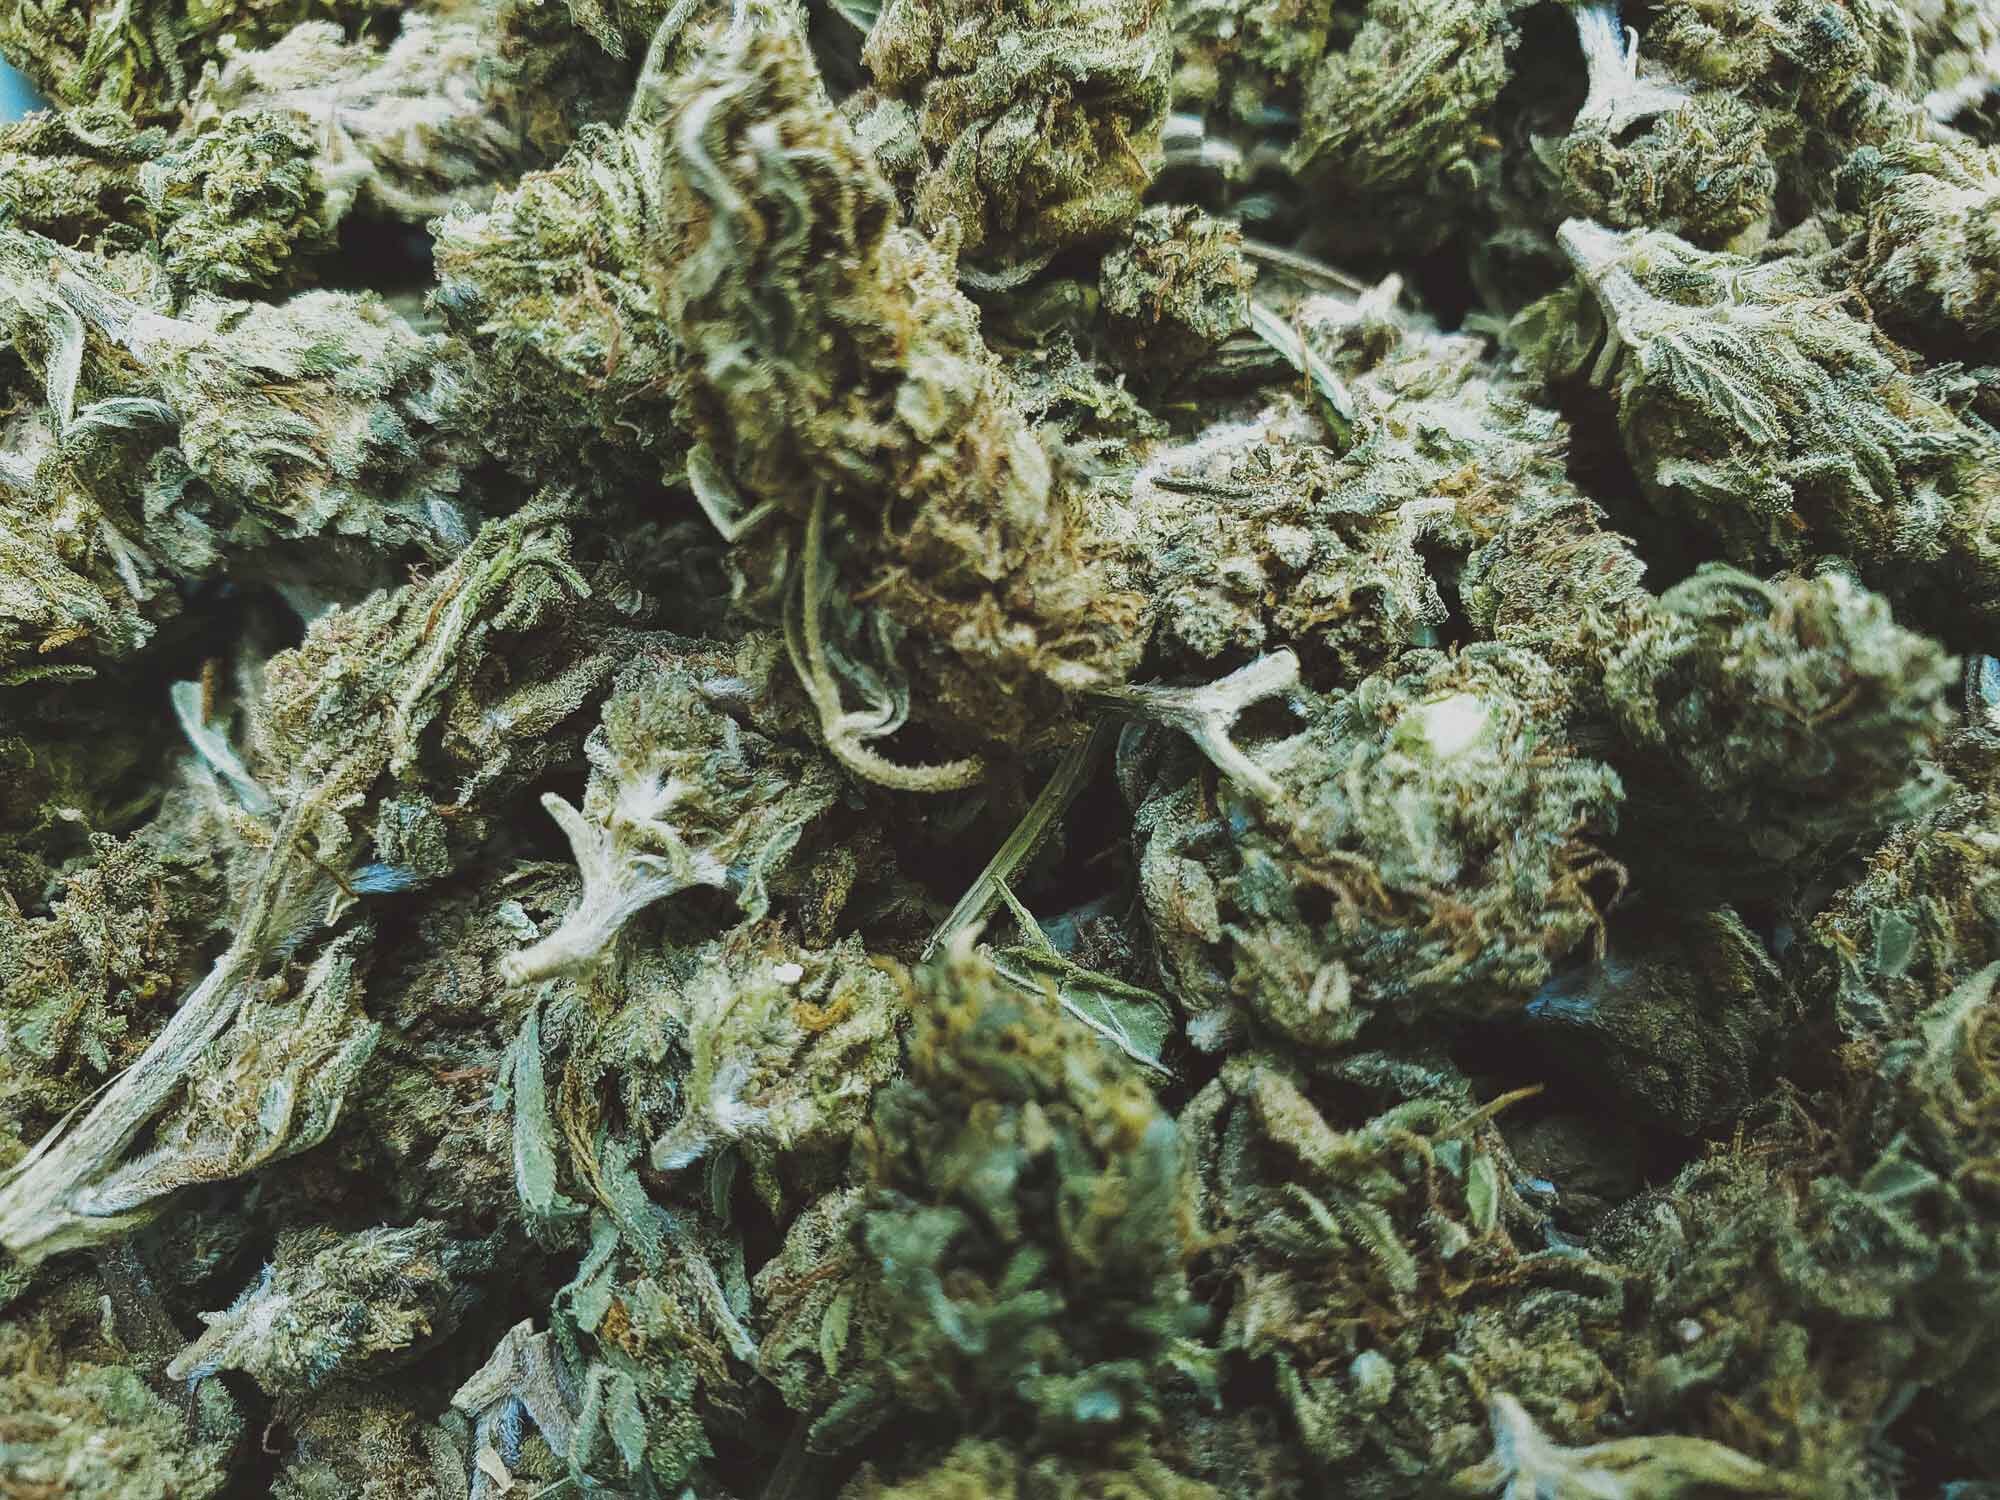 Cannabis Harvest